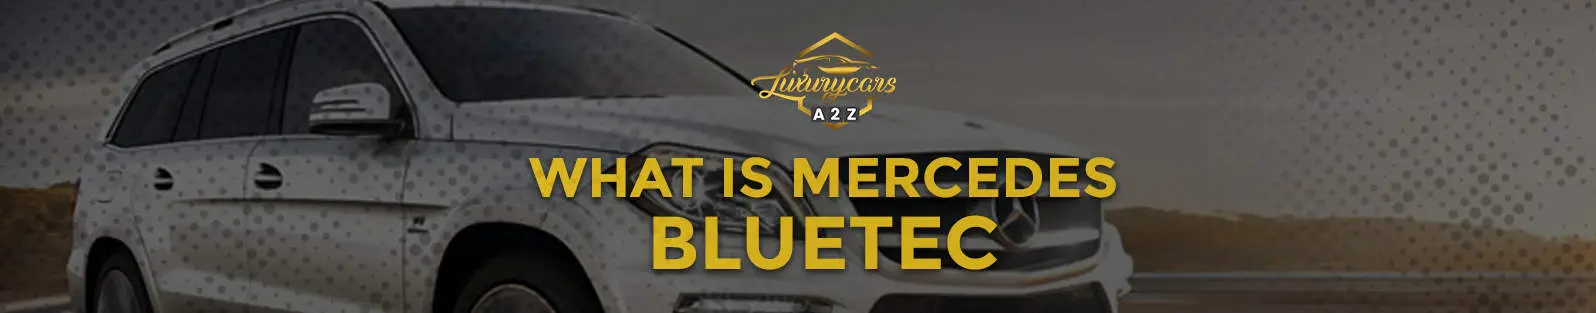 Qu'est-ce que Mercedes BlueTec ?